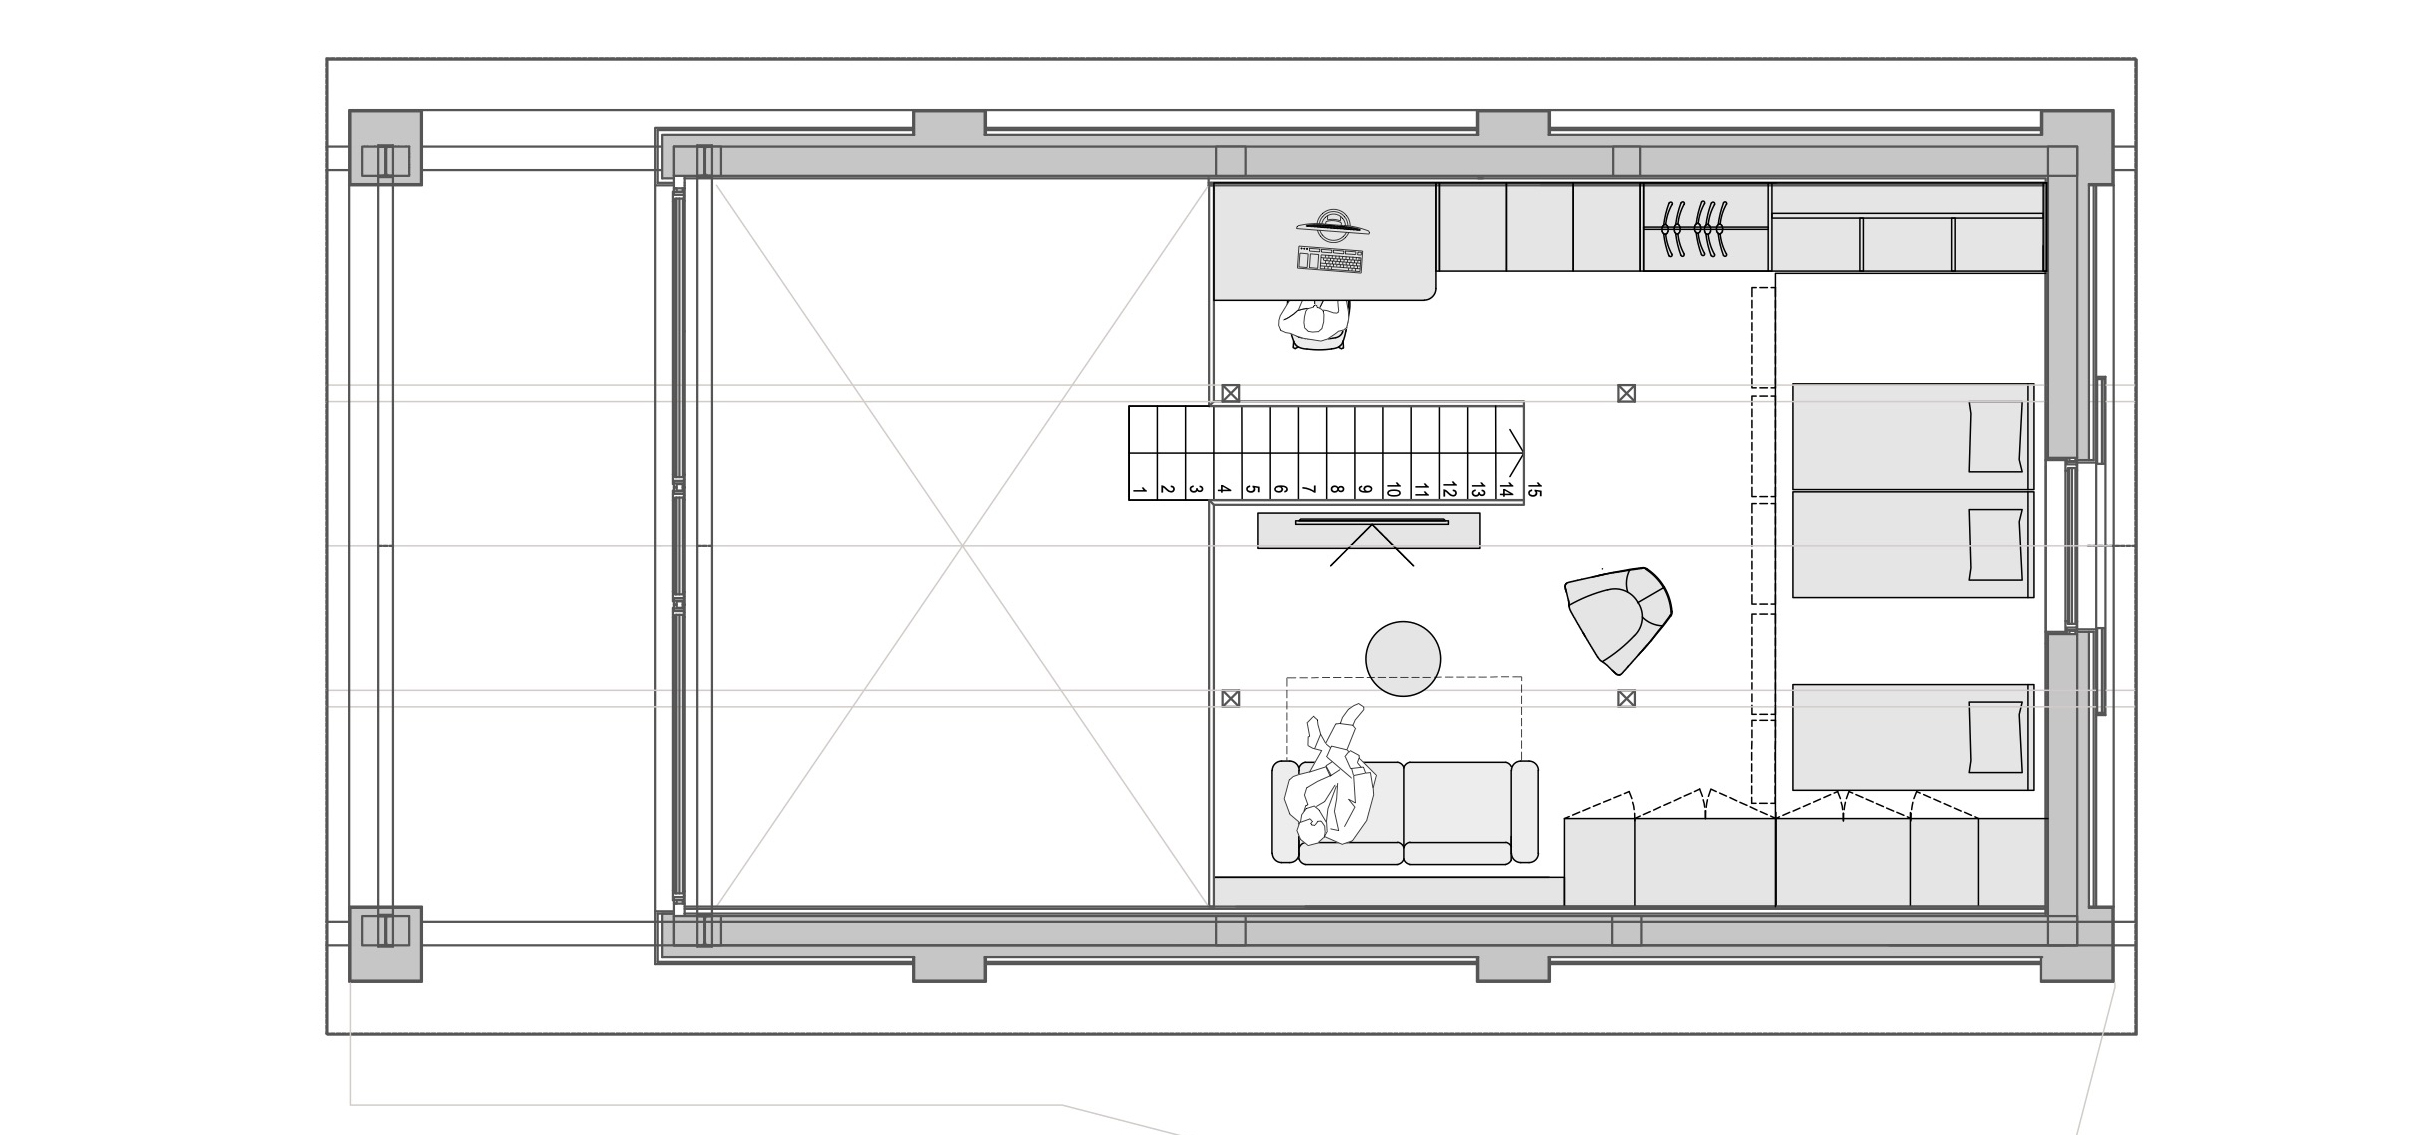 Prostornina | Soca Valley Glamping Resort, Glamping interior design | Floor plan | Apartment house